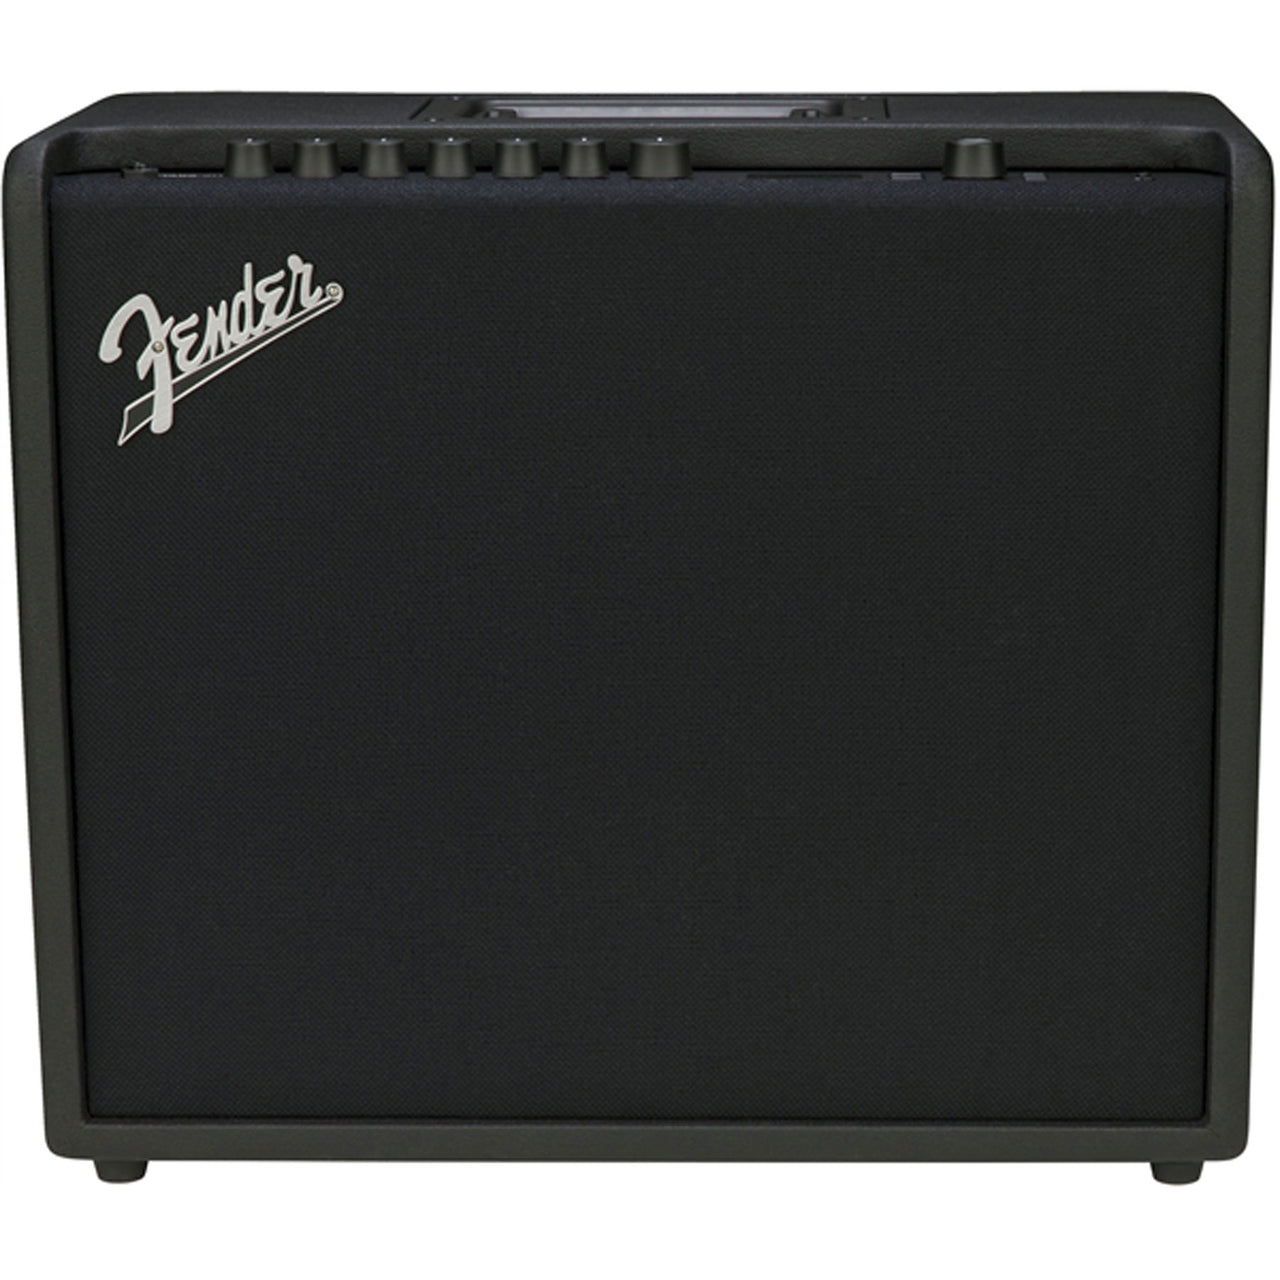 Amplificador Fender Mustang Gt 100 120v, 2310200000